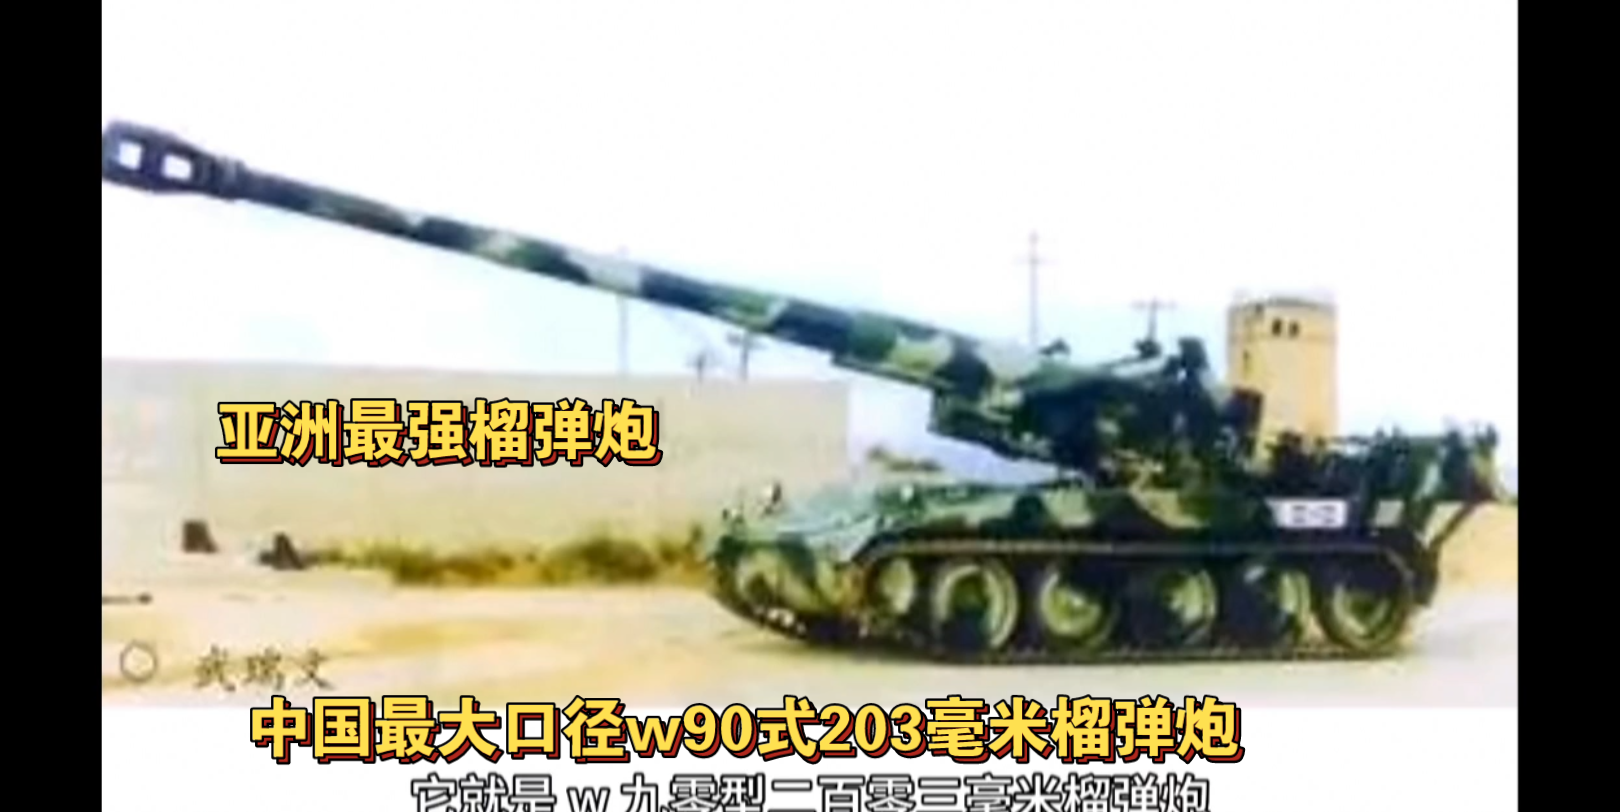 亚洲最强榴弹炮，中国w90式203毫米榴弹炮